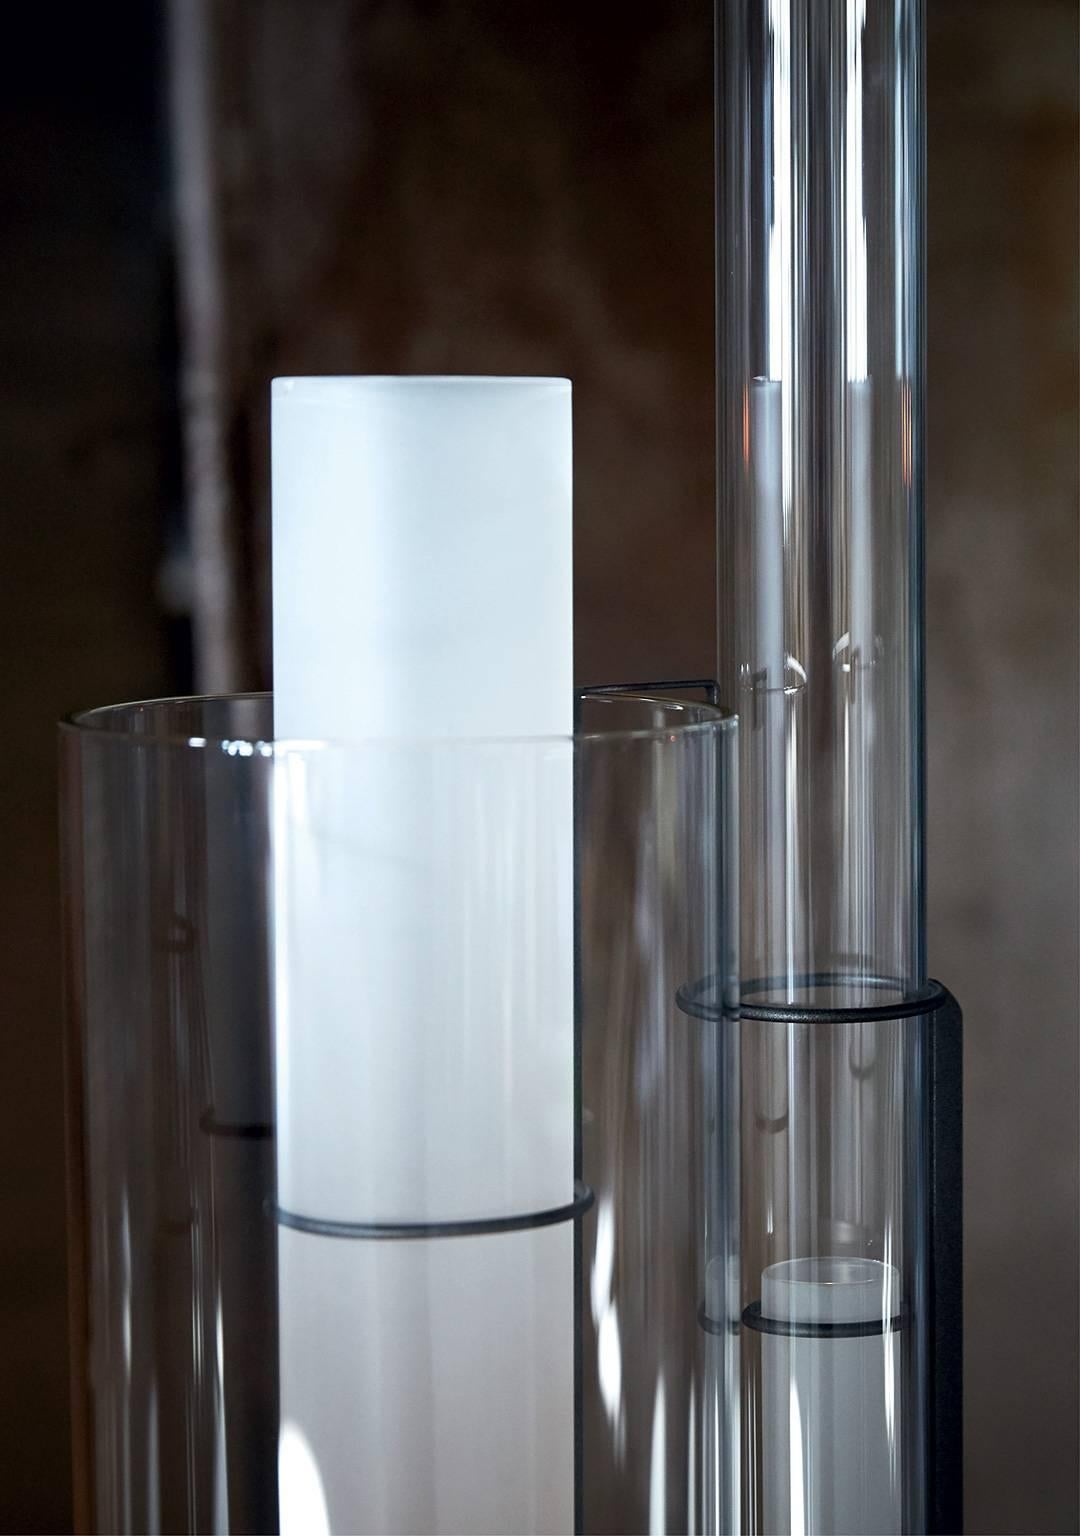 Lampadaire en verre de Murano transparent soufflé à la bouche avec un corps éclairant, structure métallique en fer peint anthracite et laiton naturel. La lampe a été conçue en 1984 par Carlo Moretti et Paolo Martinuzzi. 

2x ampoules de 100 watts